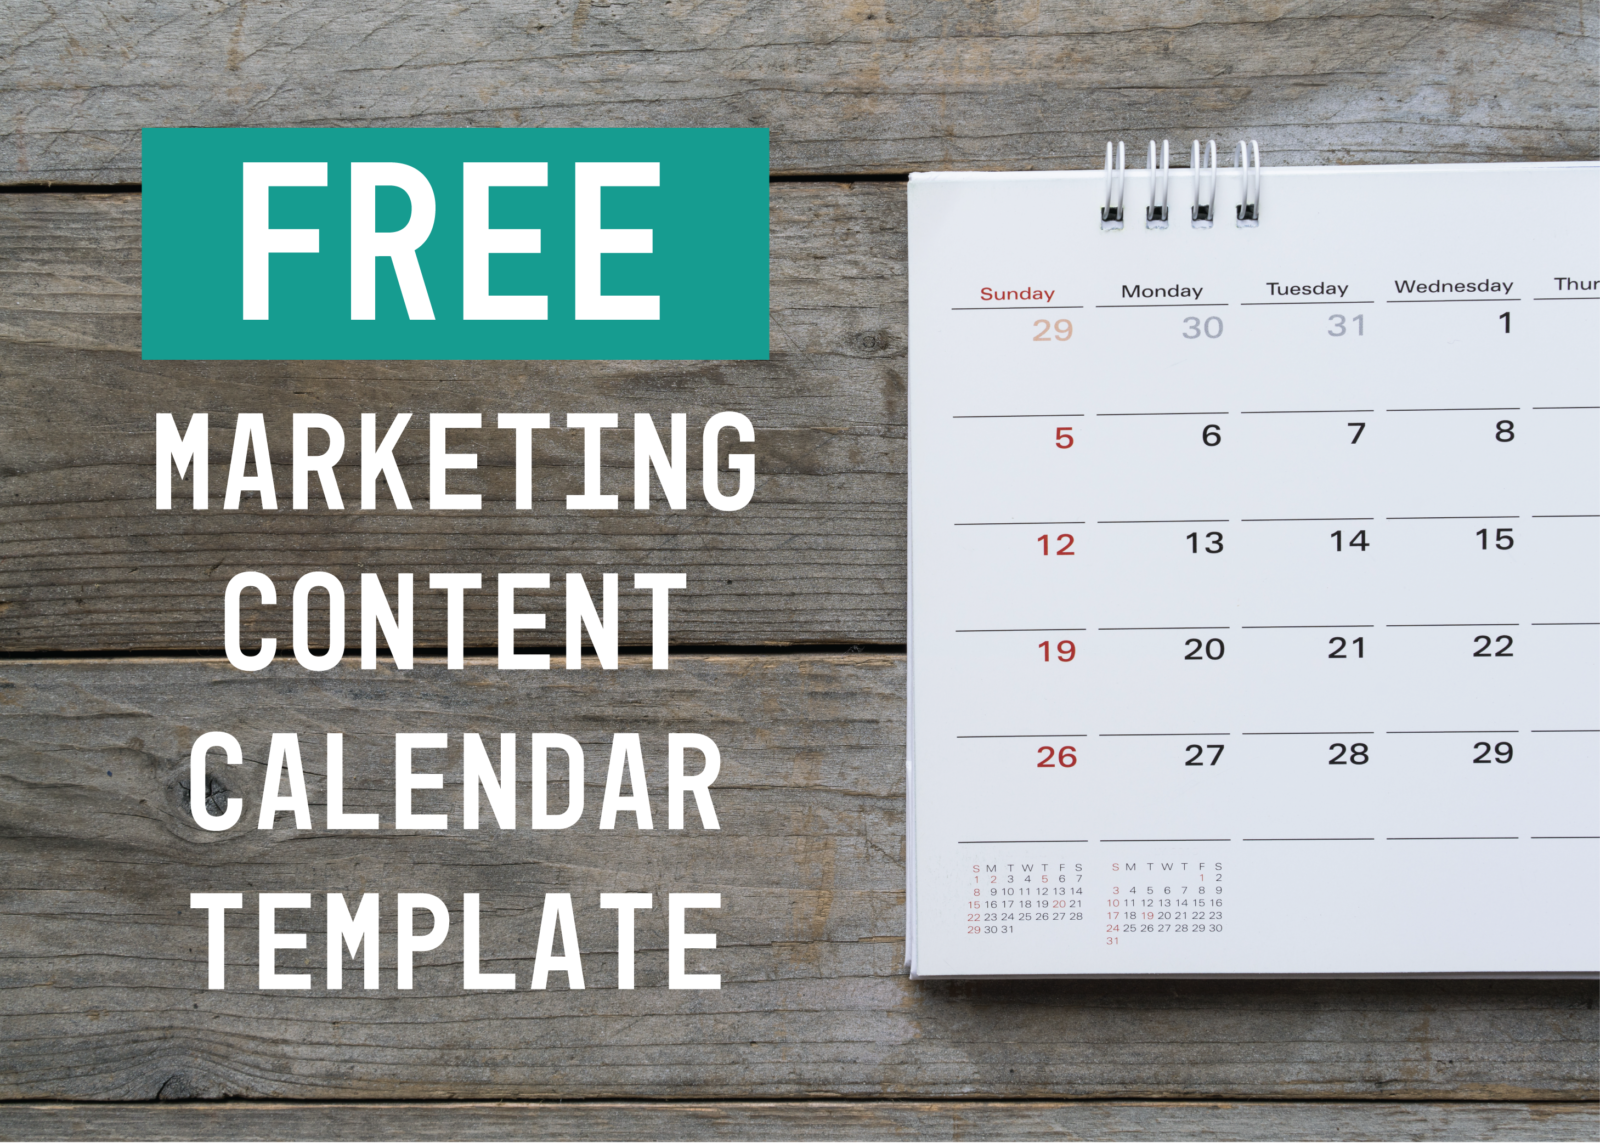 Free Marketing Content Calendar for Social Media